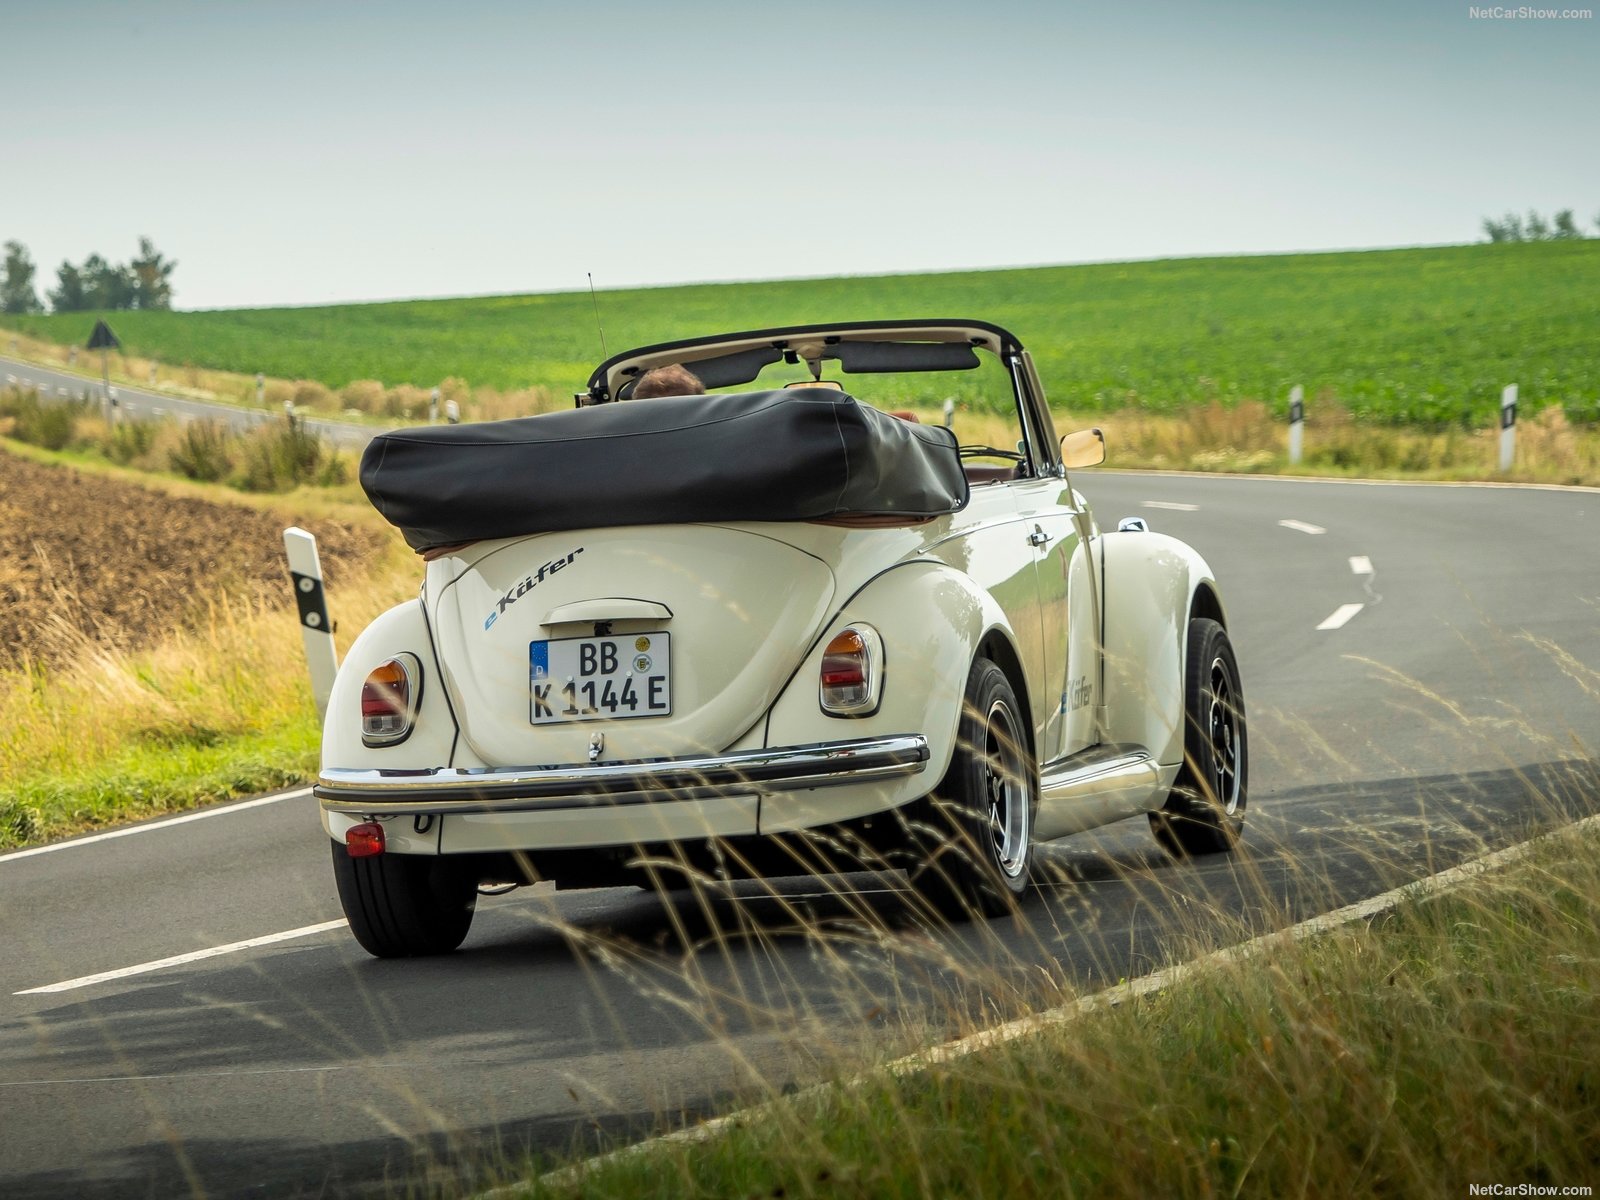 Volkswagen e-Beetle: il maggiolino classico ma elettrico